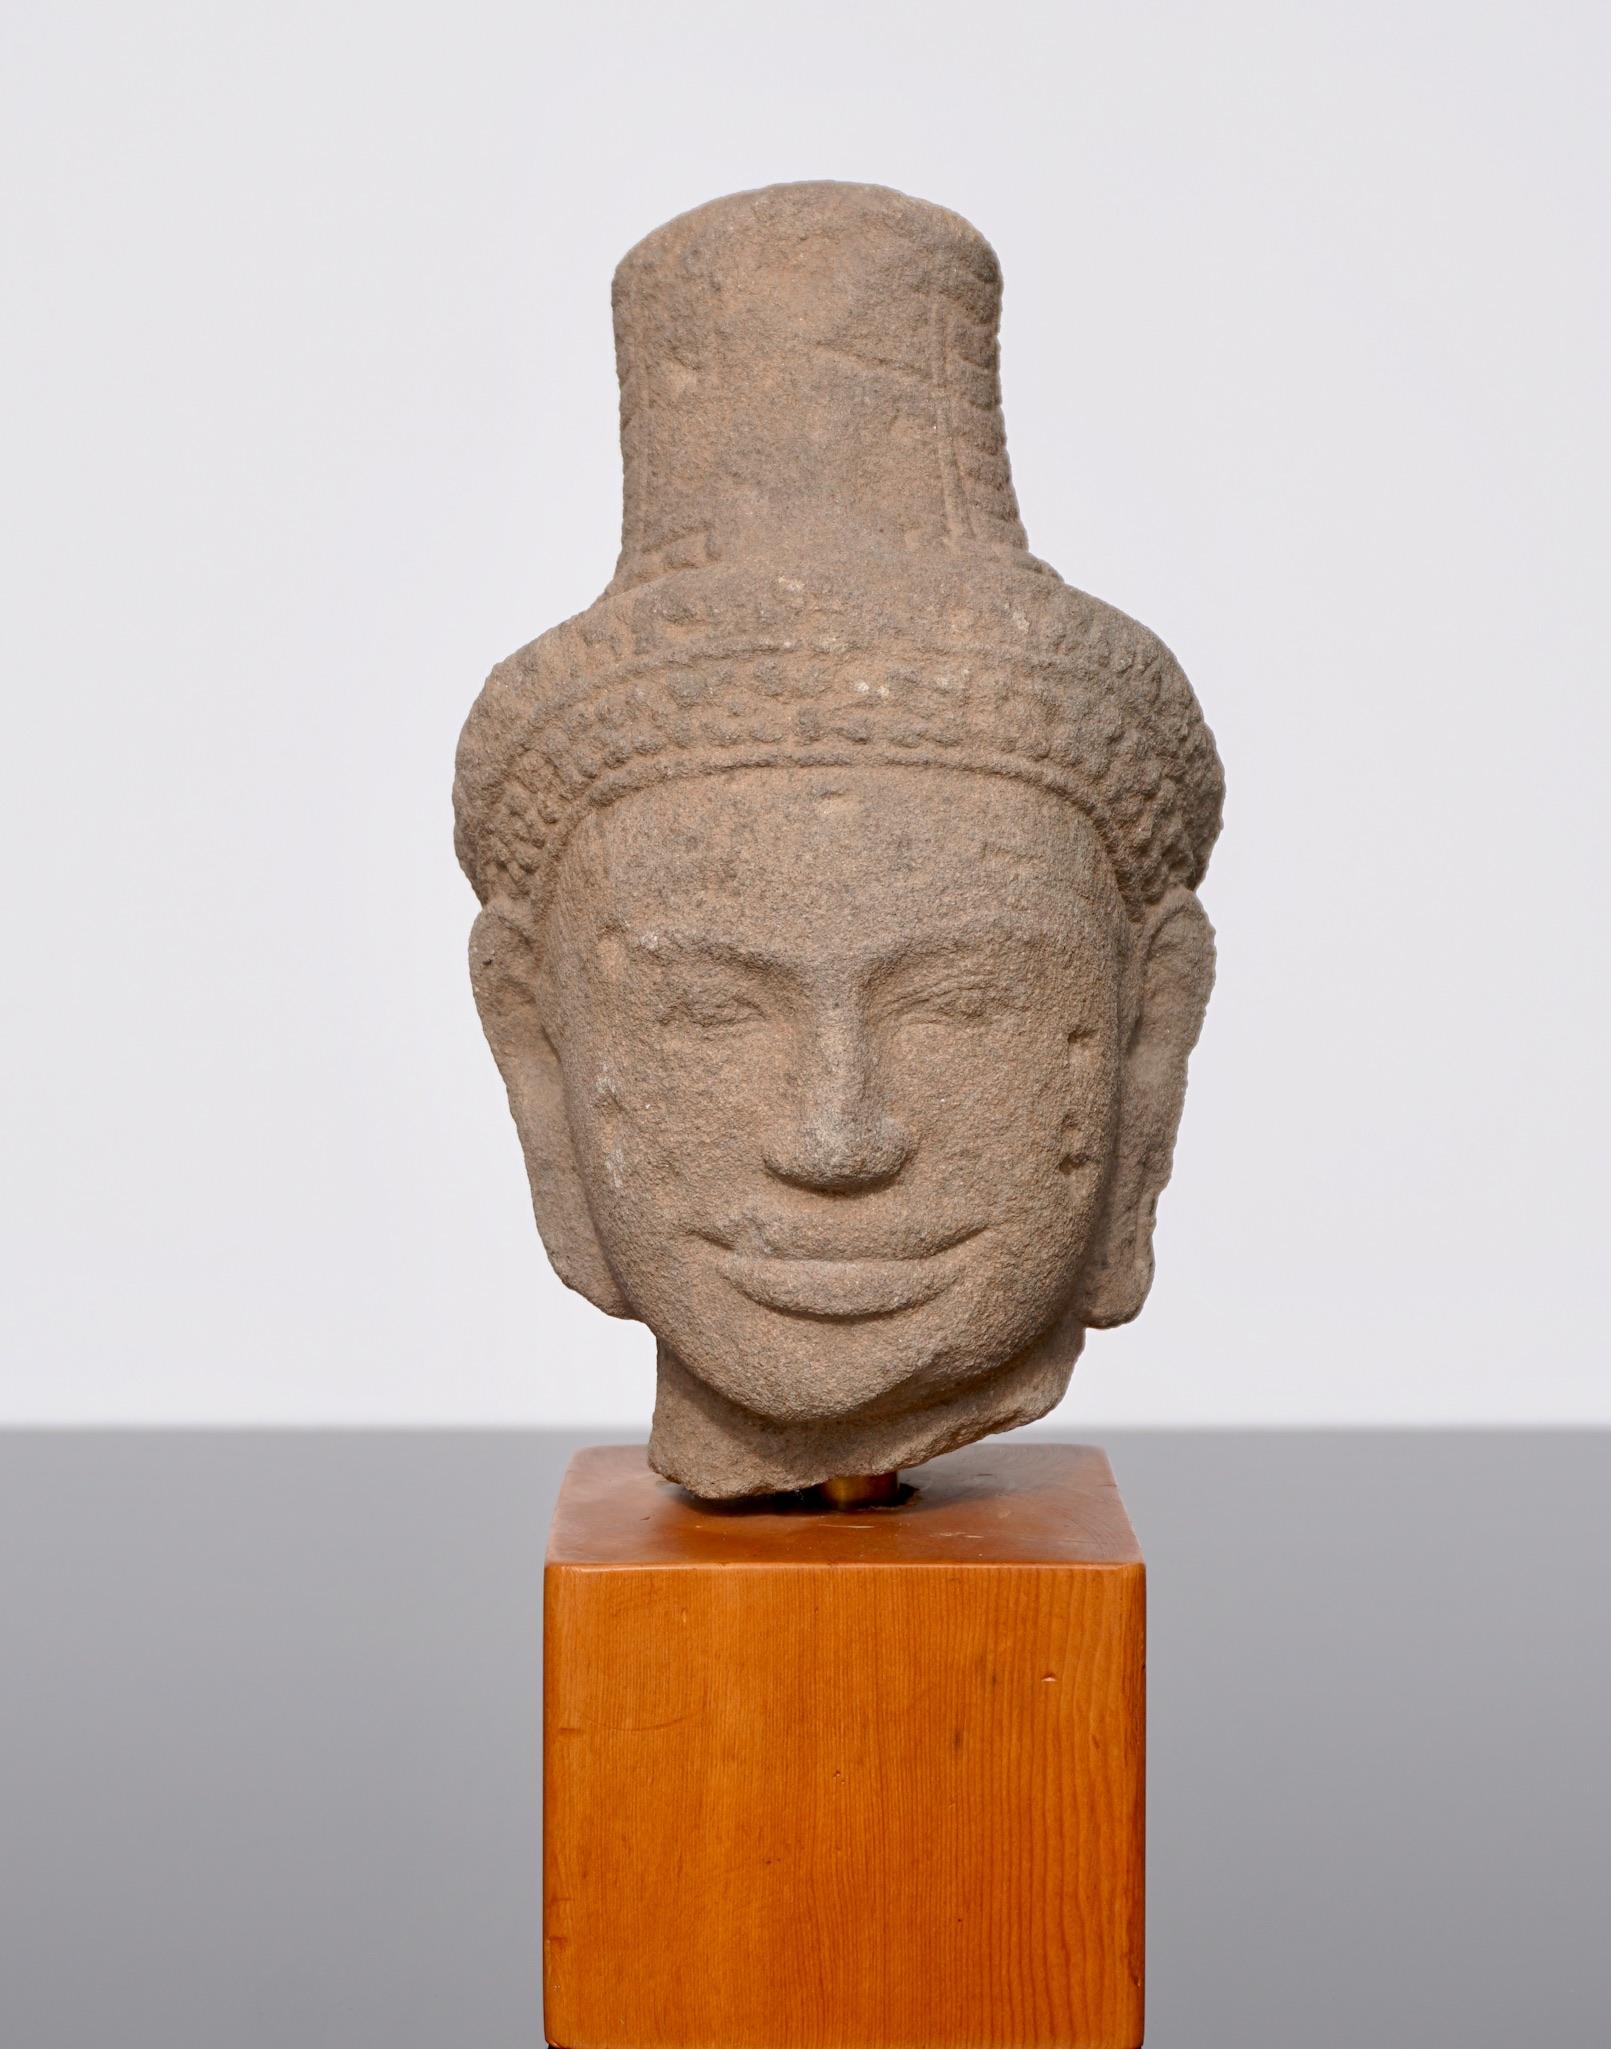 Tête de Shiva en grès Khmer, style Baphuon, vers le 11e siècle. Une rare tête de Shiva en grès gris khmer. La belle tête de la divinité Shiva. Son visage à l'expression sereine, ses yeux en amande, ses sourcils striés et ses lobes d'oreilles